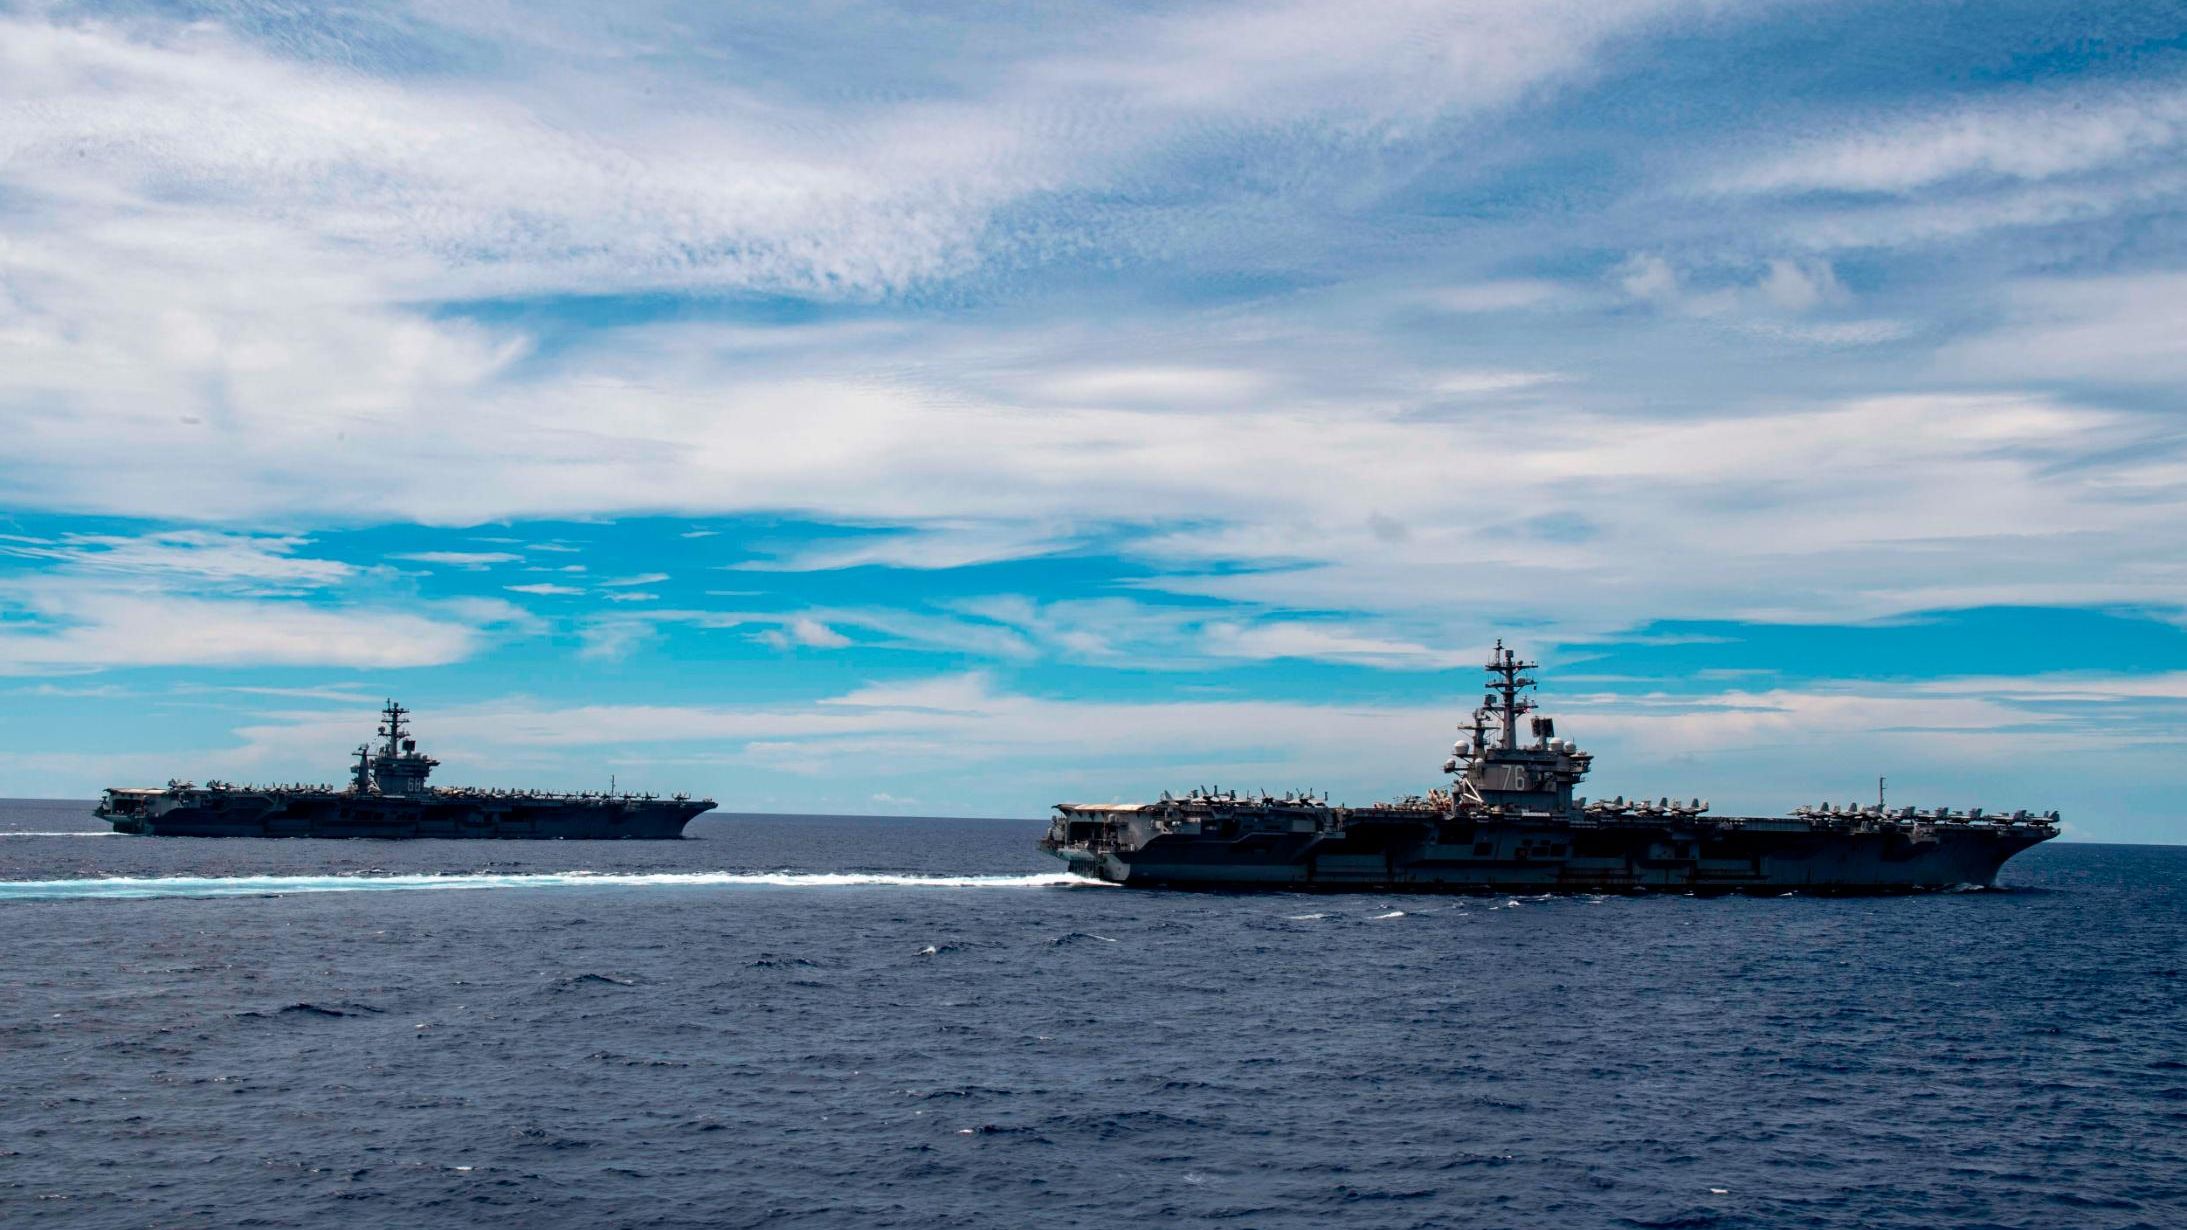 The Nimitz-class aircraft carriers USS Nimitz and Ronald Reagan transit the South China Sea.